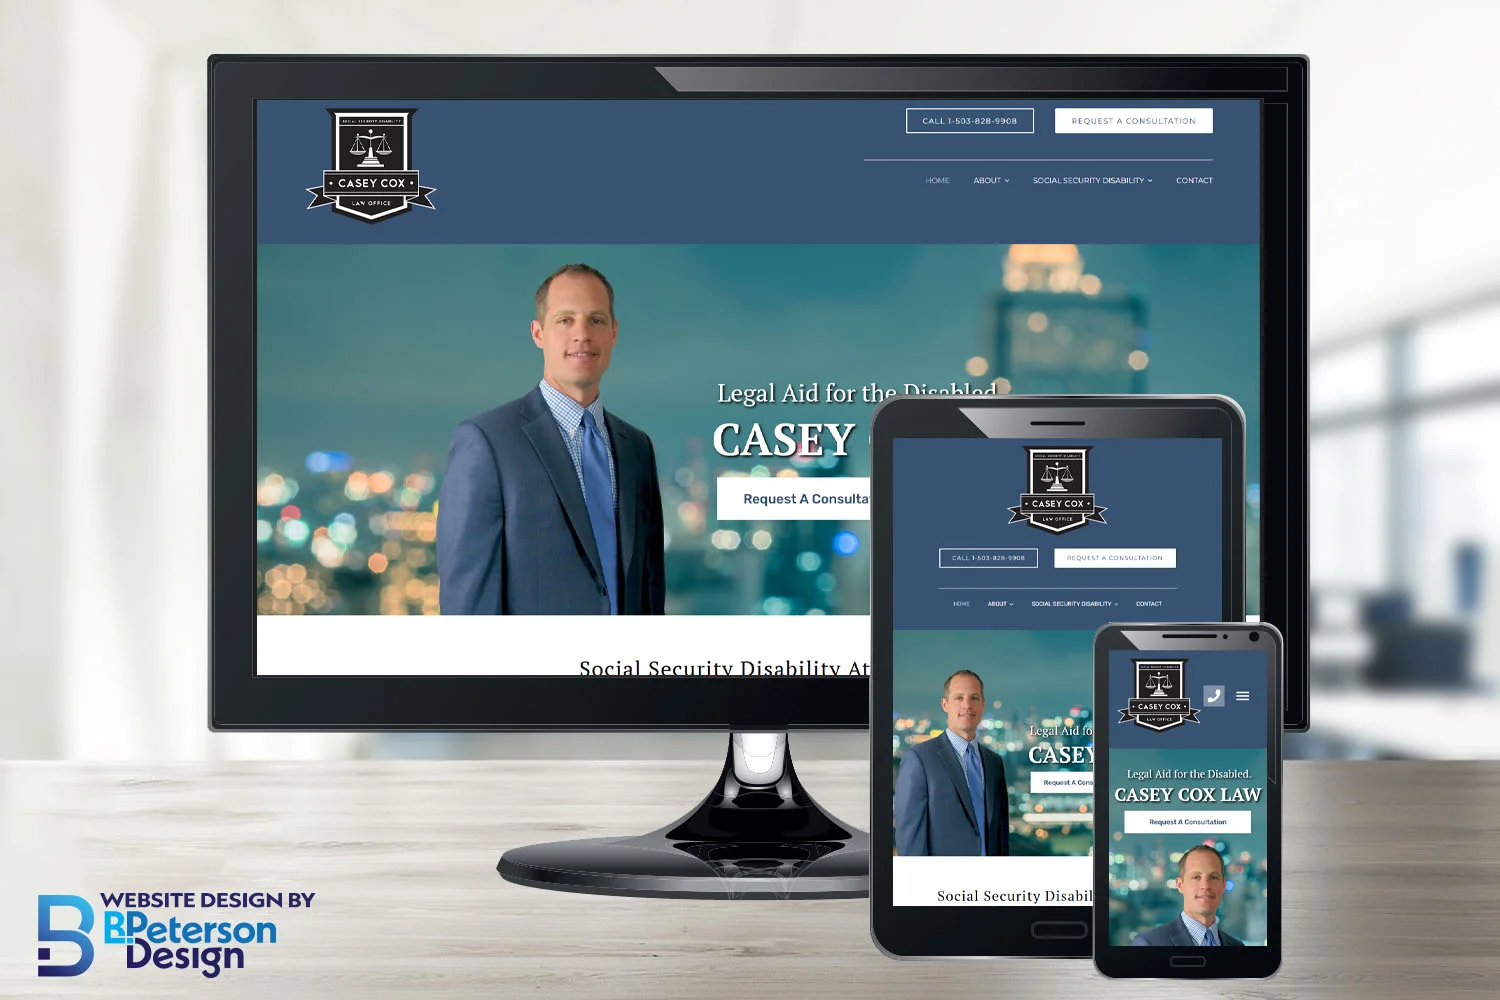 Casey Cox Law's website displayed on responsive platforms